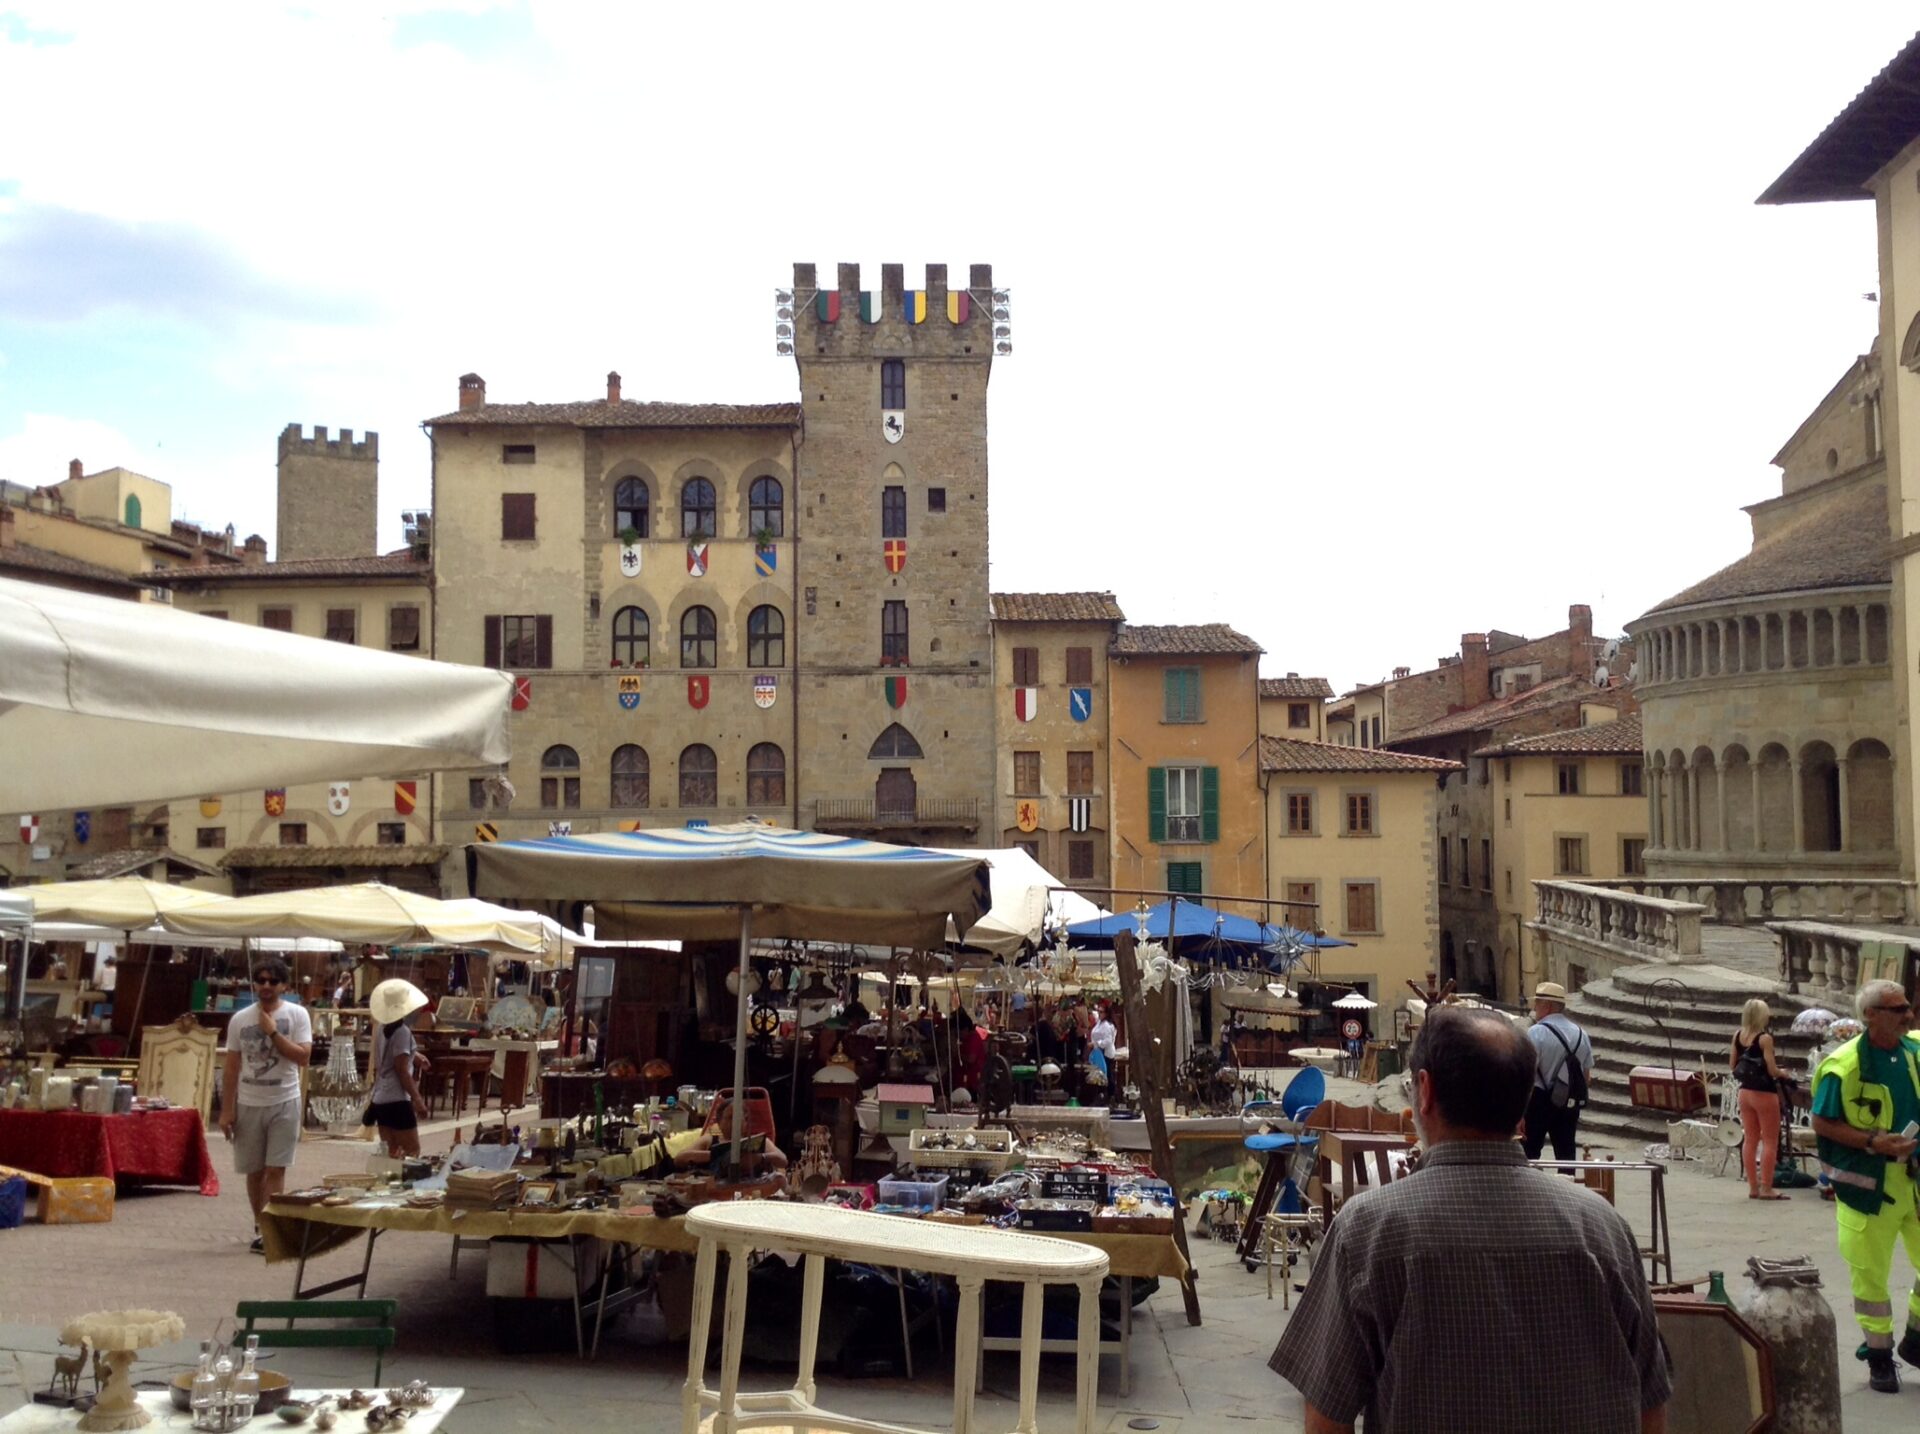 Fiera Antiquaria, Arezzo punta sulla nuova legge regionale per il rilancio